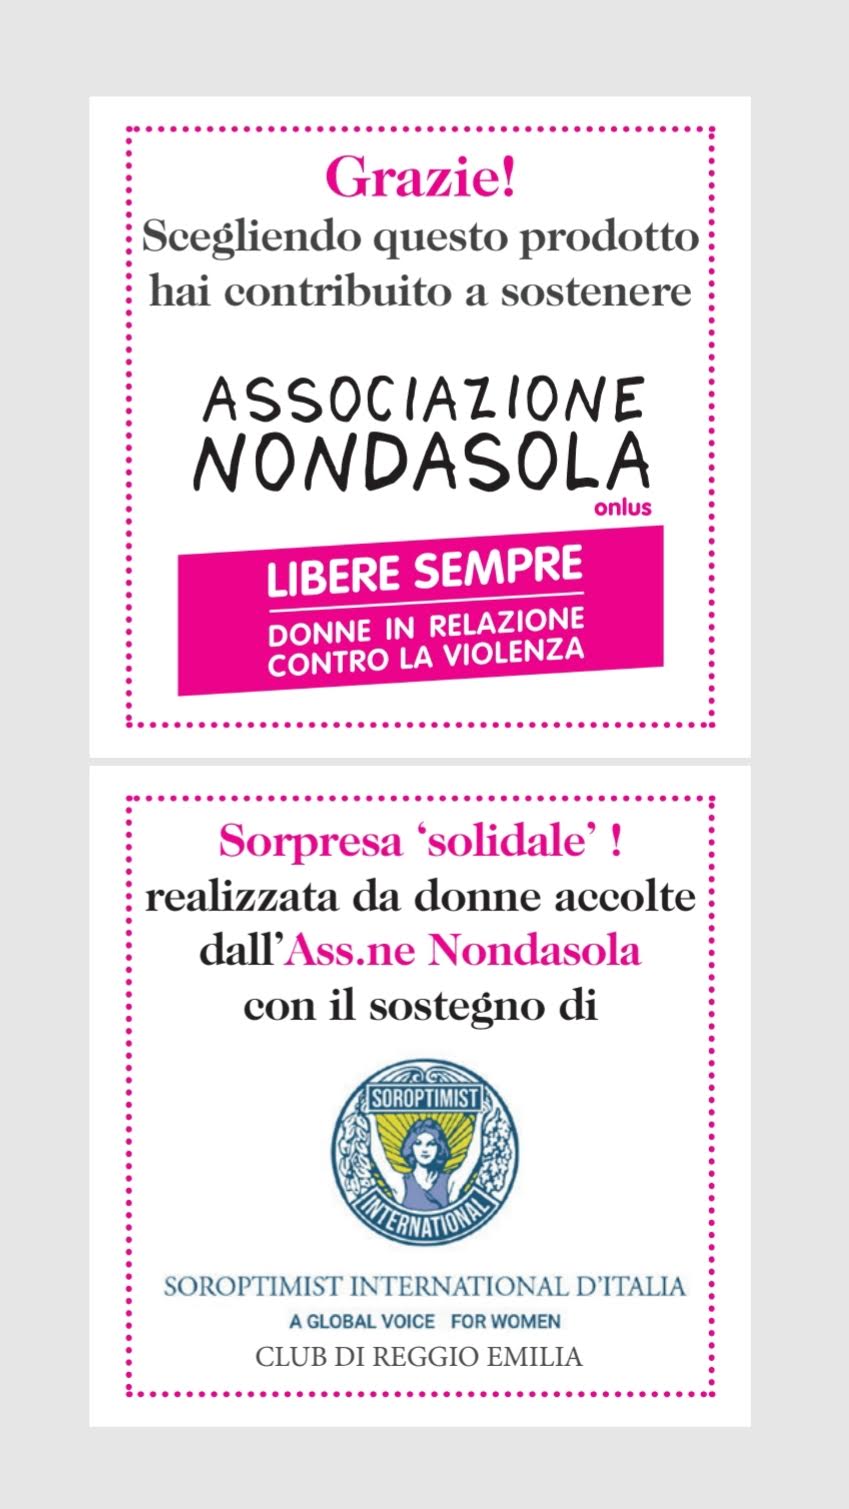 Pasqua Solidale  con il Club di Reggio Emilia